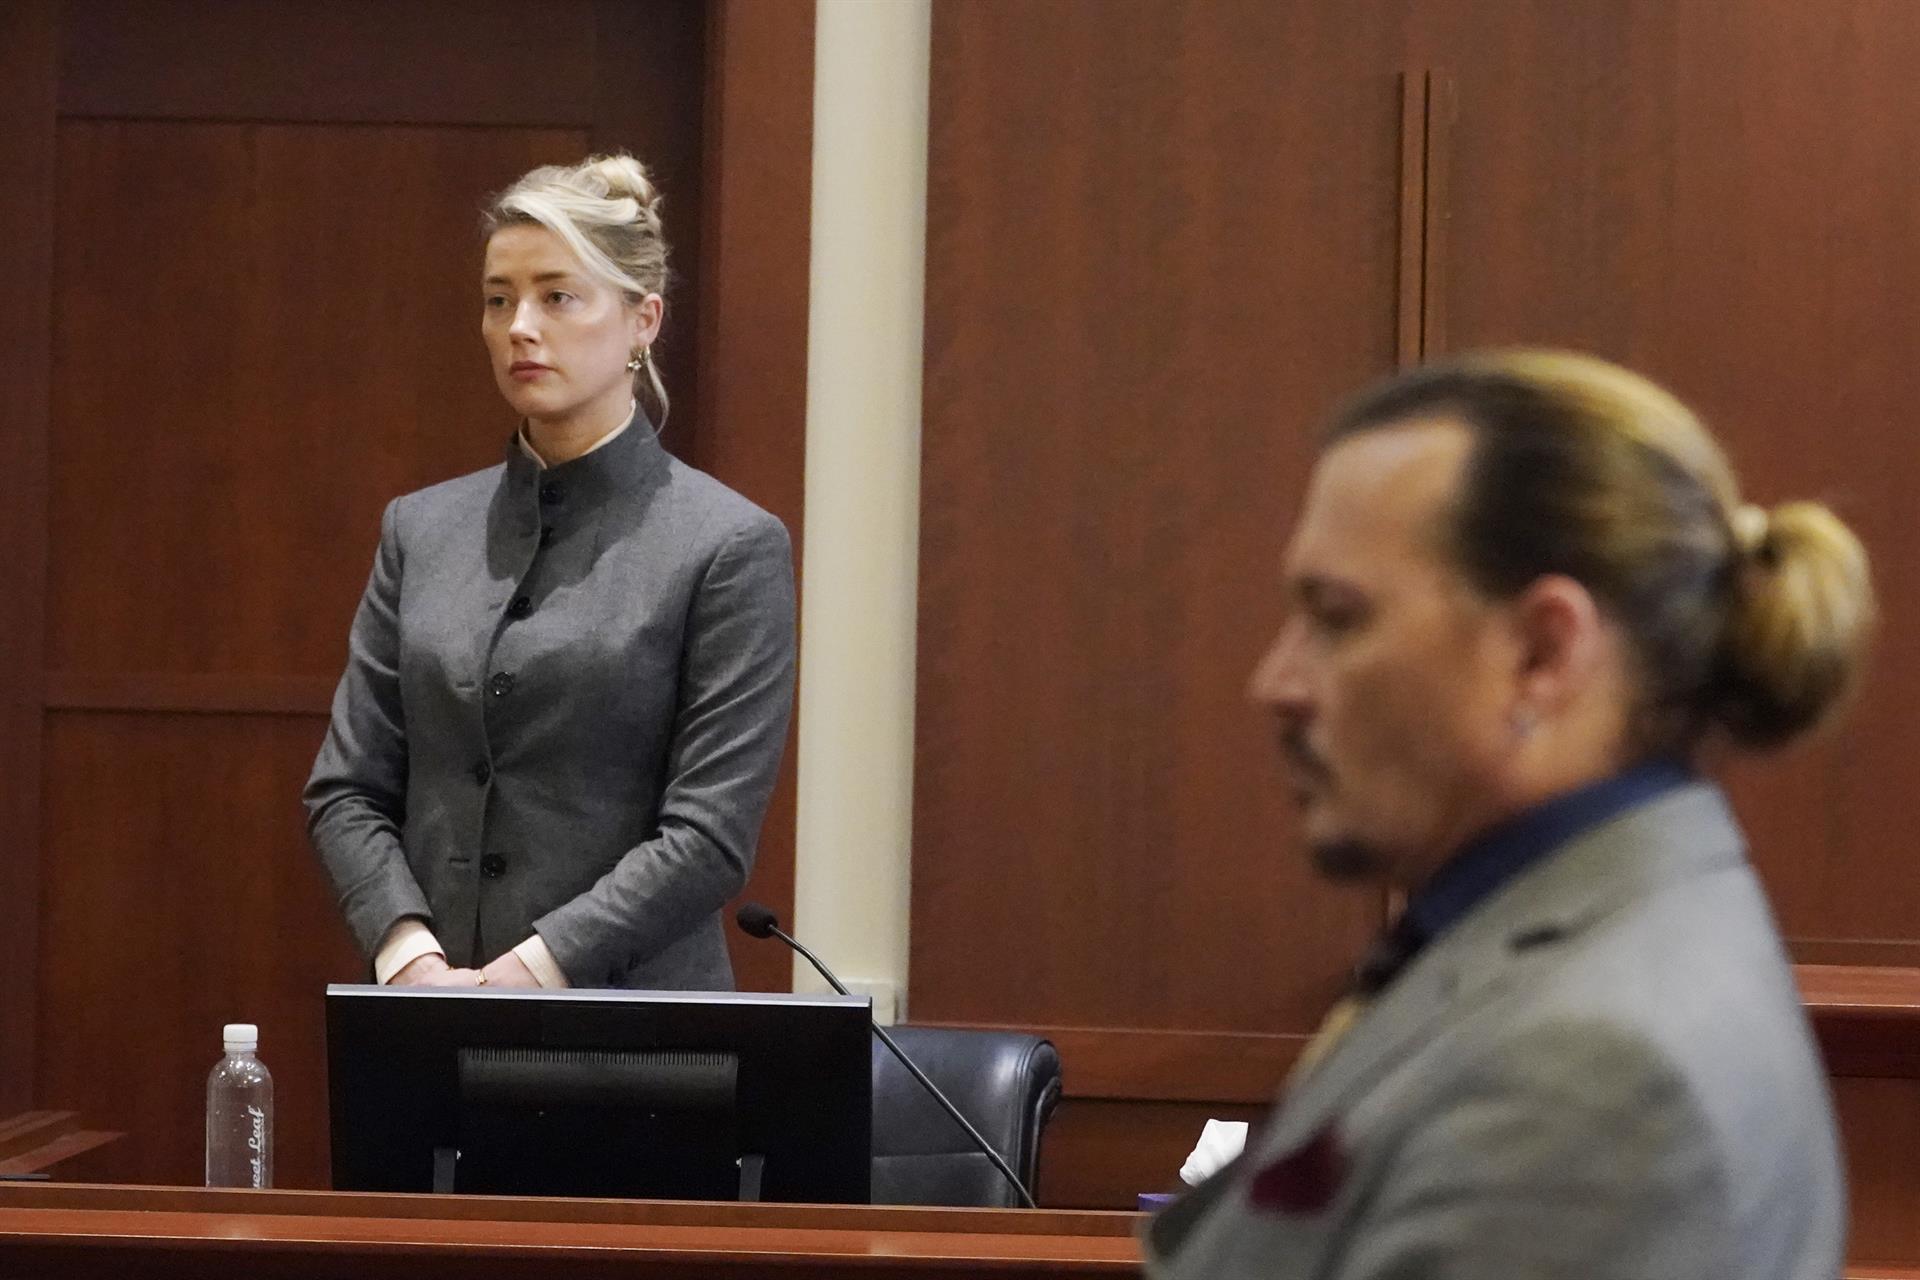 El mediático juicio de Johnny Depp y Amber Heard